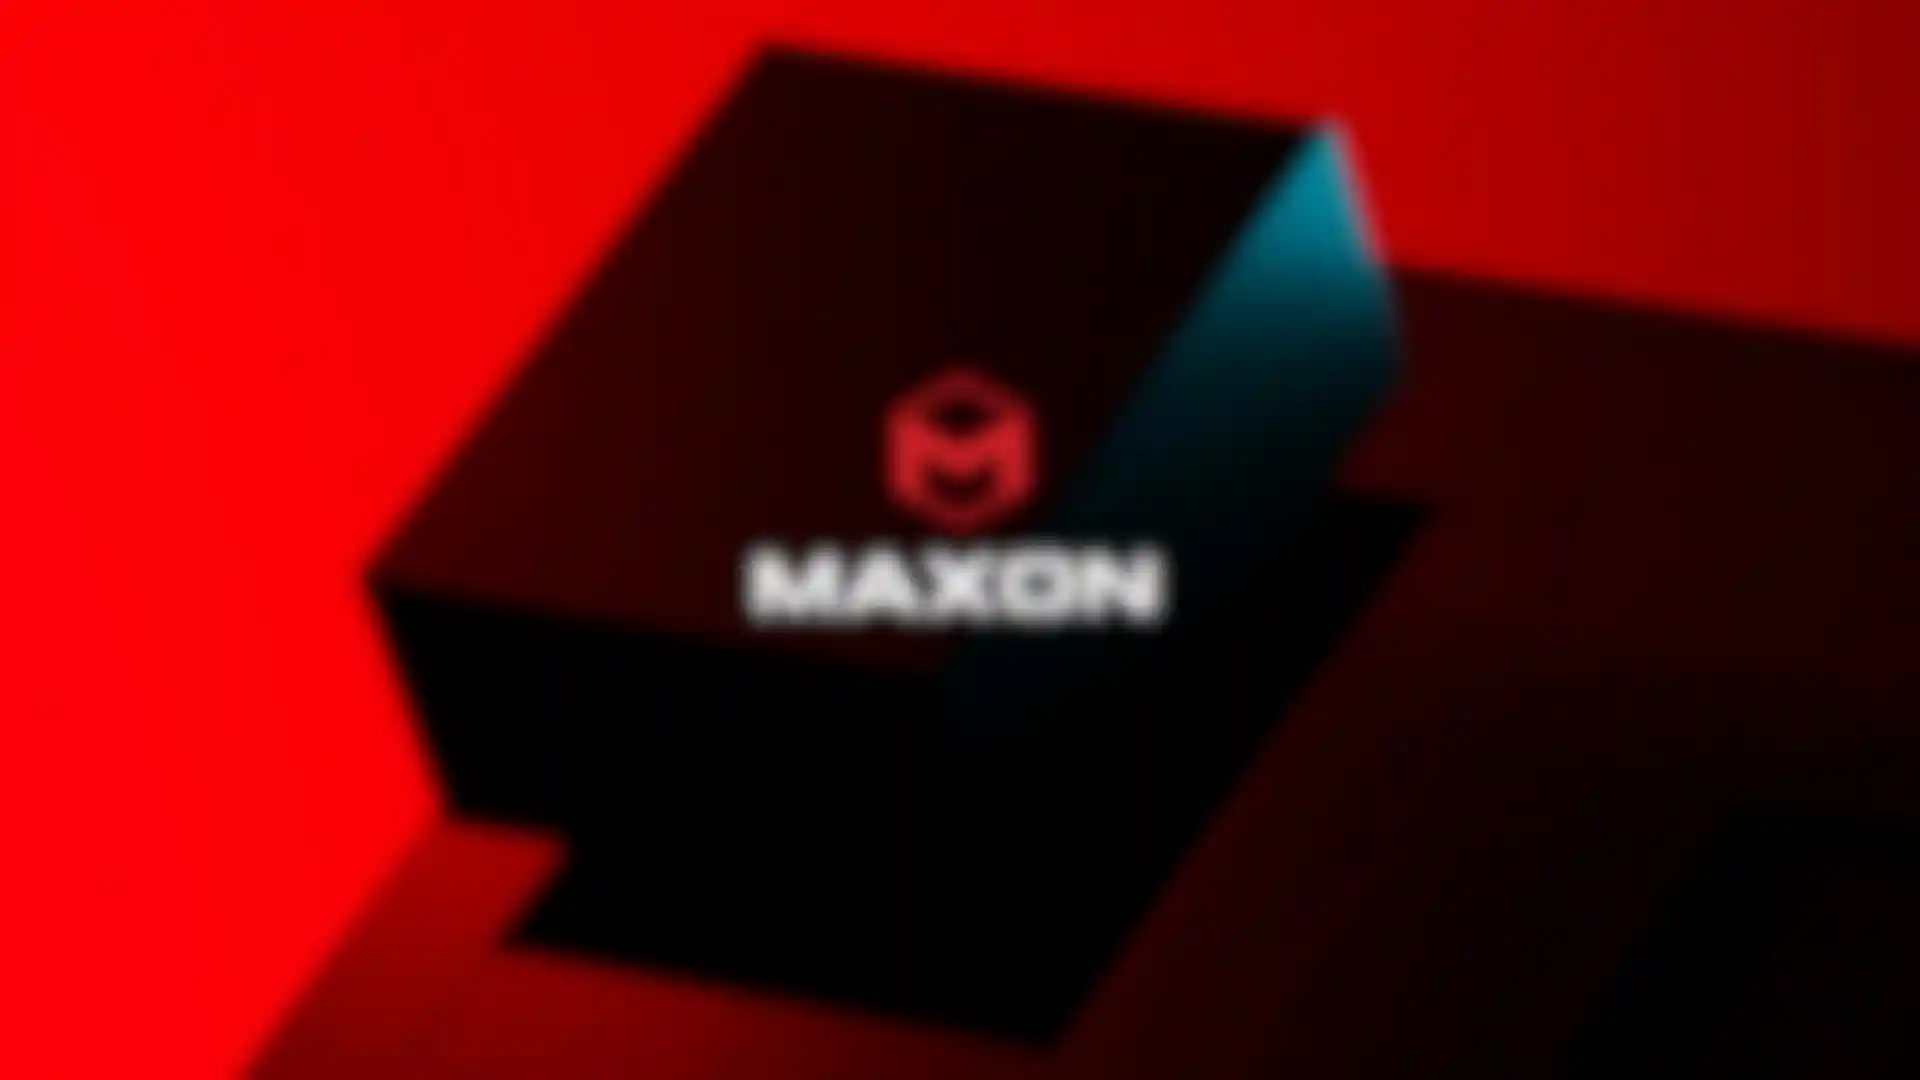 Maxon stellt neue Corporate Identity vor image